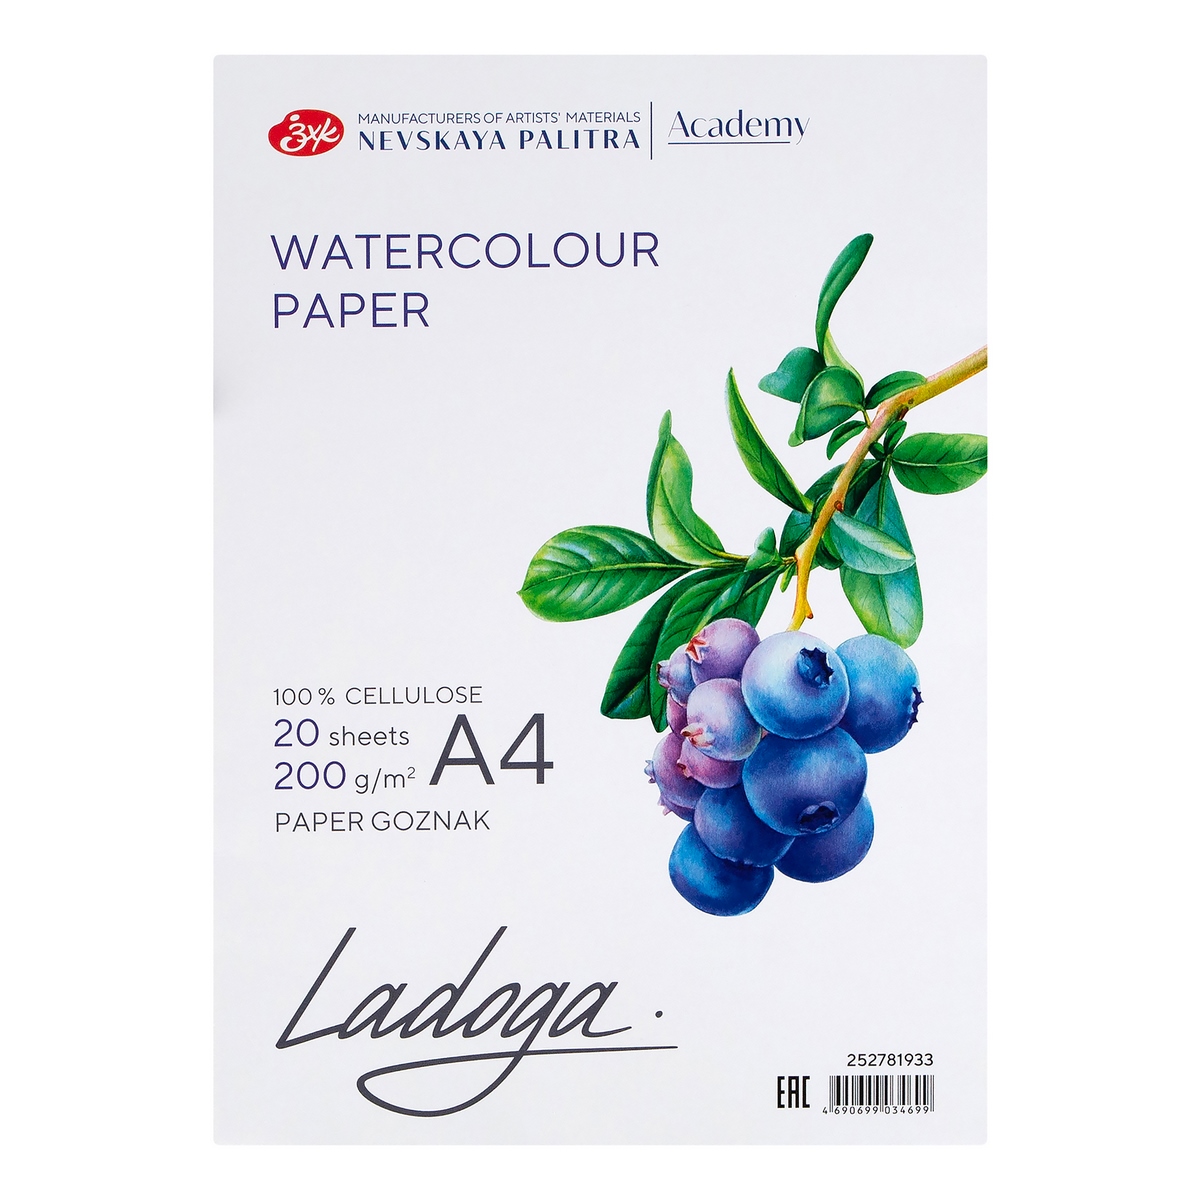 Watercolour paper folder Ladoga, А4, 200 g/m2, 20 sheets, 100% cellulose, medium grain